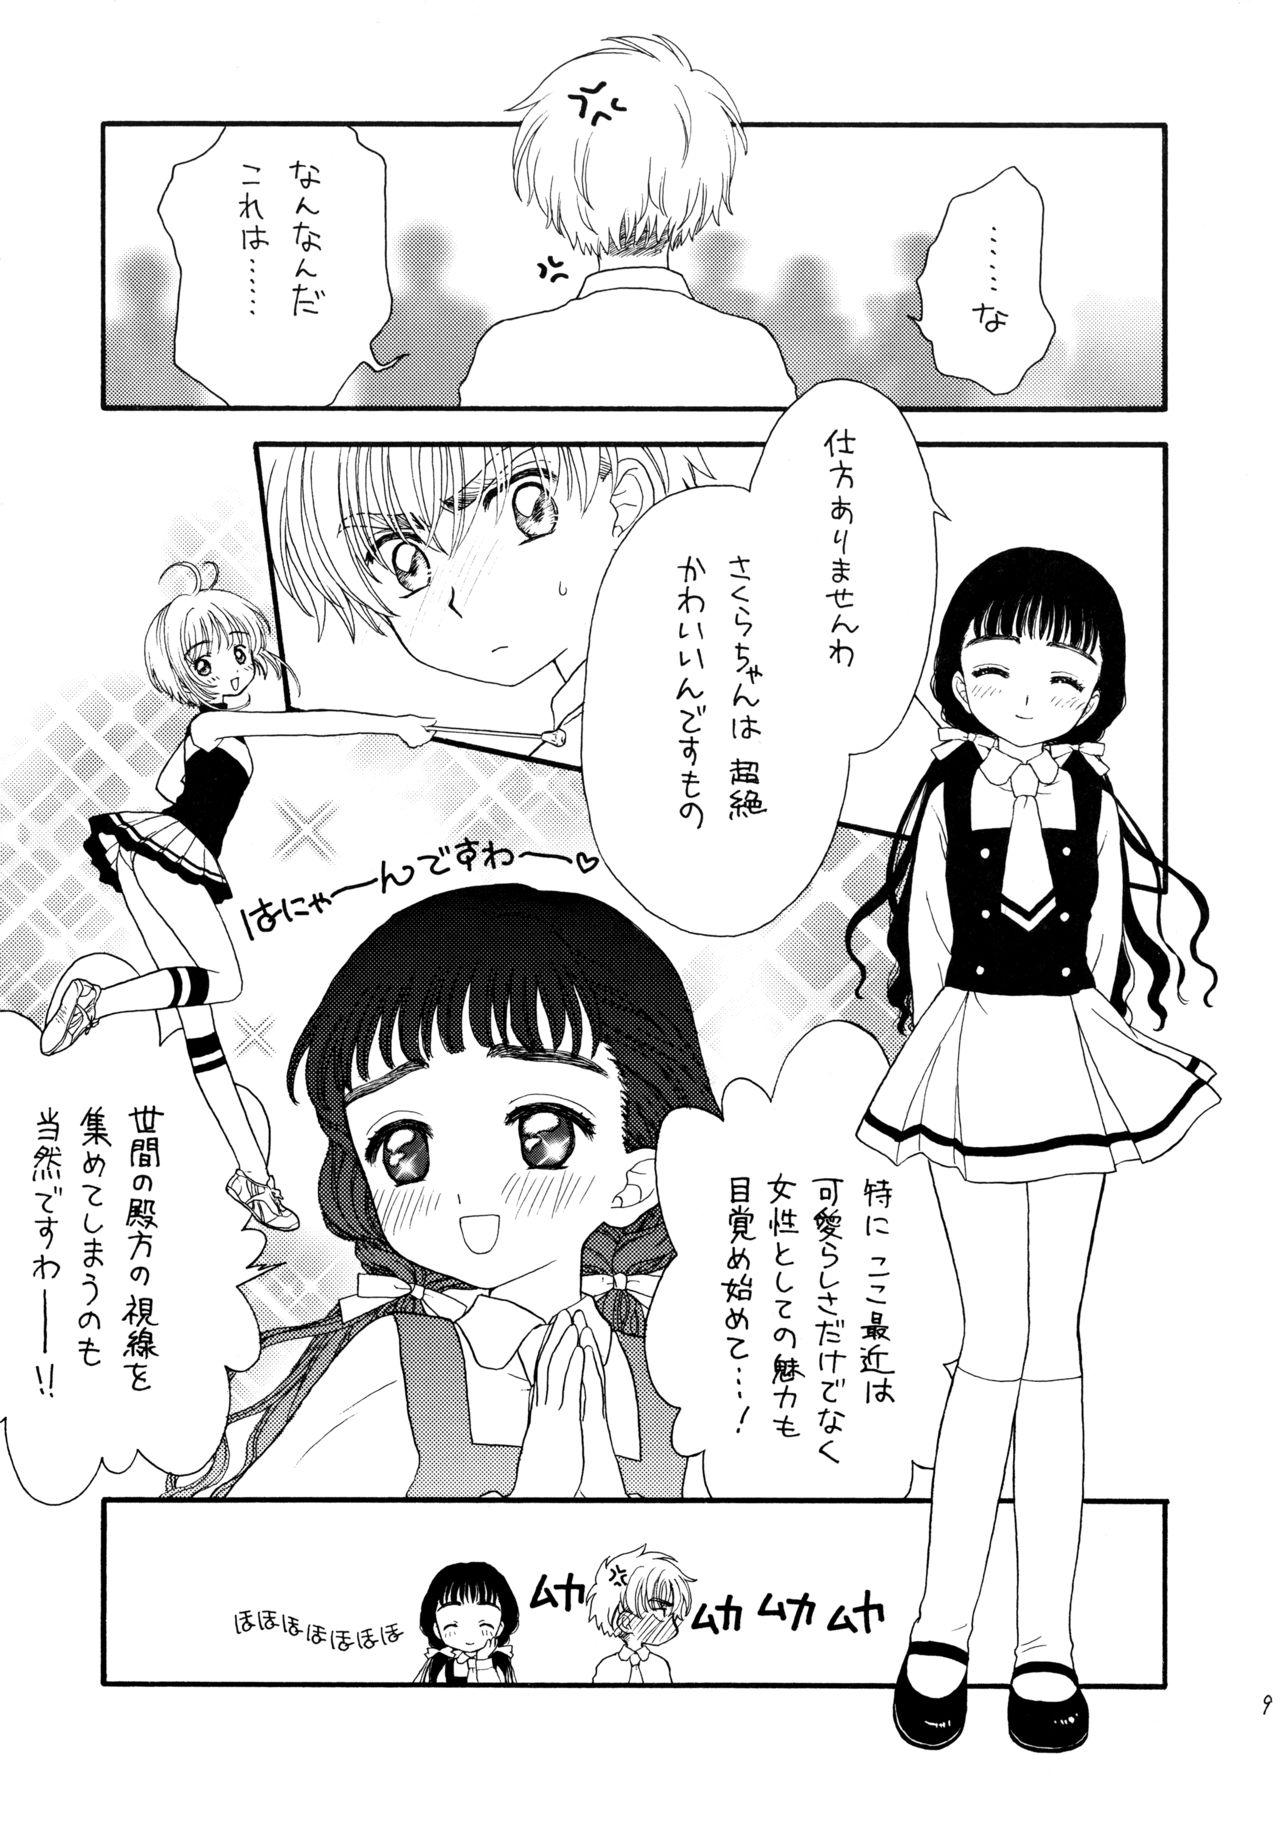 Pov Blow Job Hitorijime - Cardcaptor sakura Blow Job - Page 9